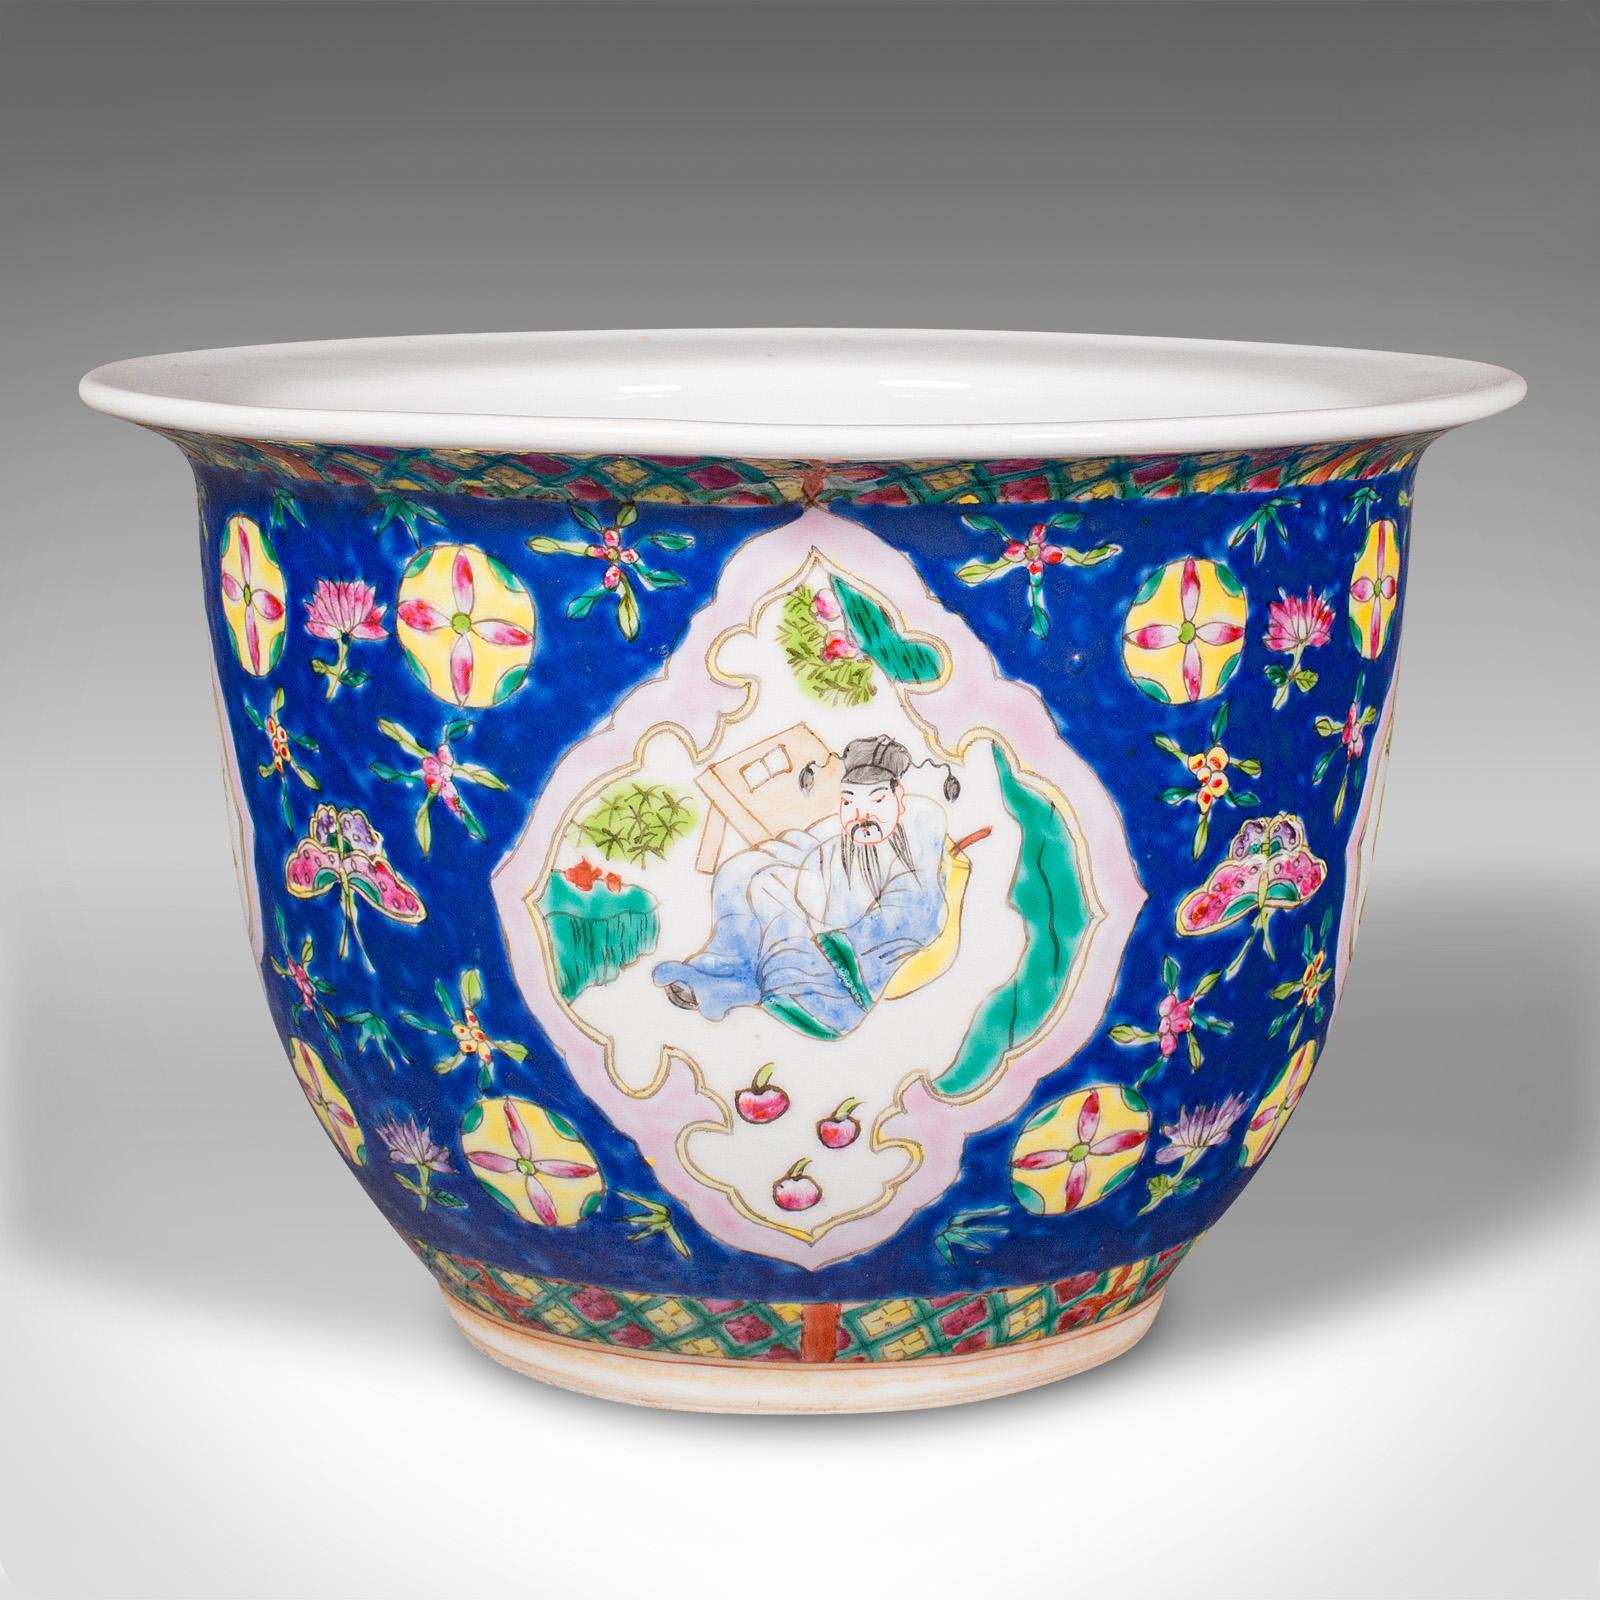 Dies ist eine antike dekorative Jardiniere. Ein chinesisches Pflanzgefäß aus Keramik aus der späten viktorianischen Zeit, um 1900.

Reizvolles dekoratives Interesse mit reicher Farbgebung und orientalischem Geschmack
Zeigt eine wünschenswerte